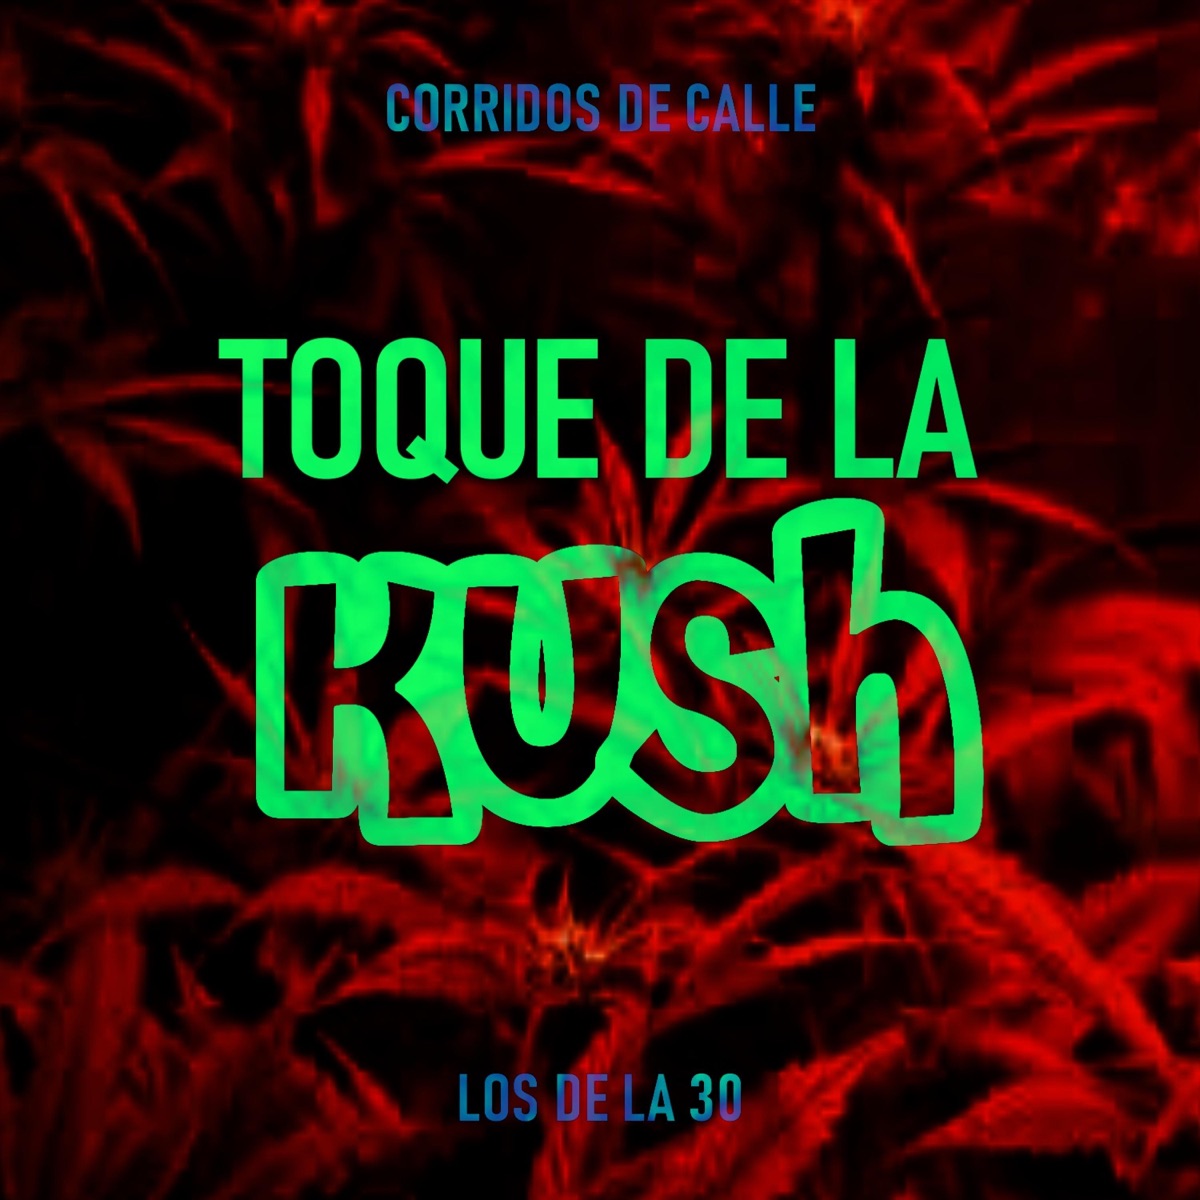 Toque de la Kush - Single - Album by Los de la Treinta - Apple Music